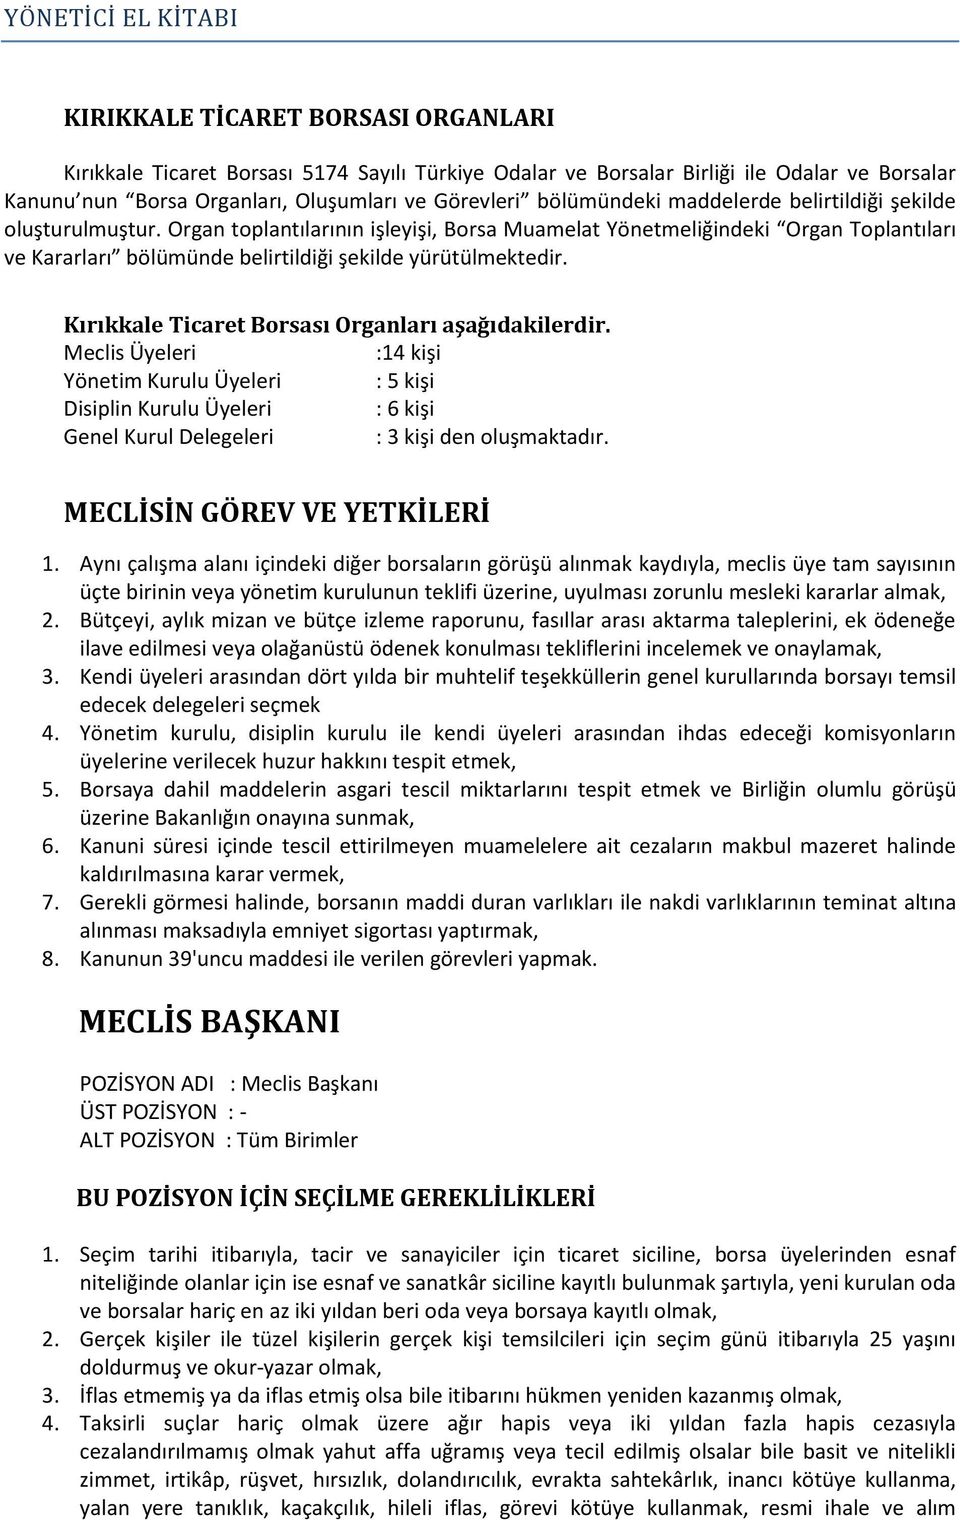 Kırıkkale Ticaret Borsası Organları aşağıdakilerdir. Meclis Üyeleri :14 kişi Yönetim Kurulu Üyeleri : 5 kişi Disiplin Kurulu Üyeleri : 6 kişi Genel Kurul Delegeleri : 3 kişi den oluşmaktadır.